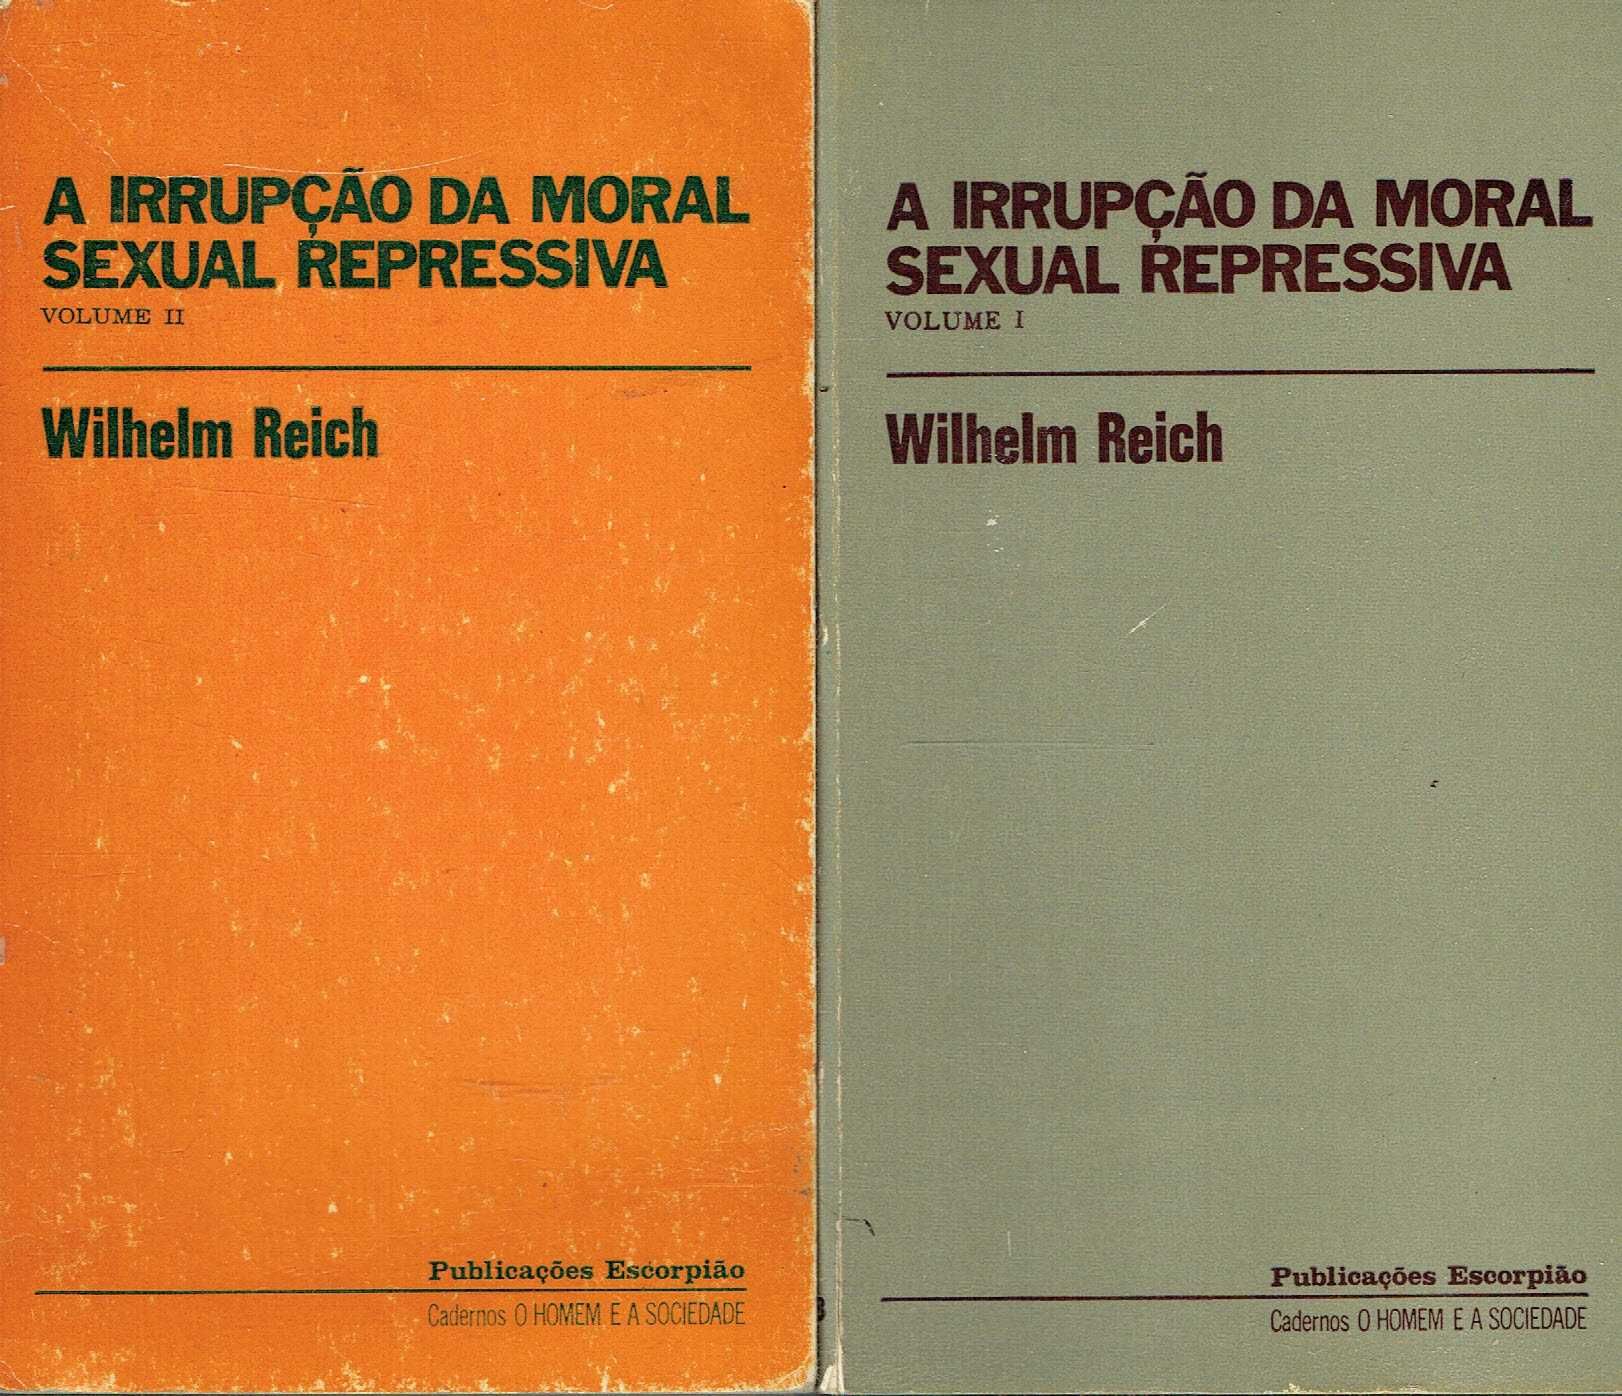 14242

Livros de Wilhelm Reich